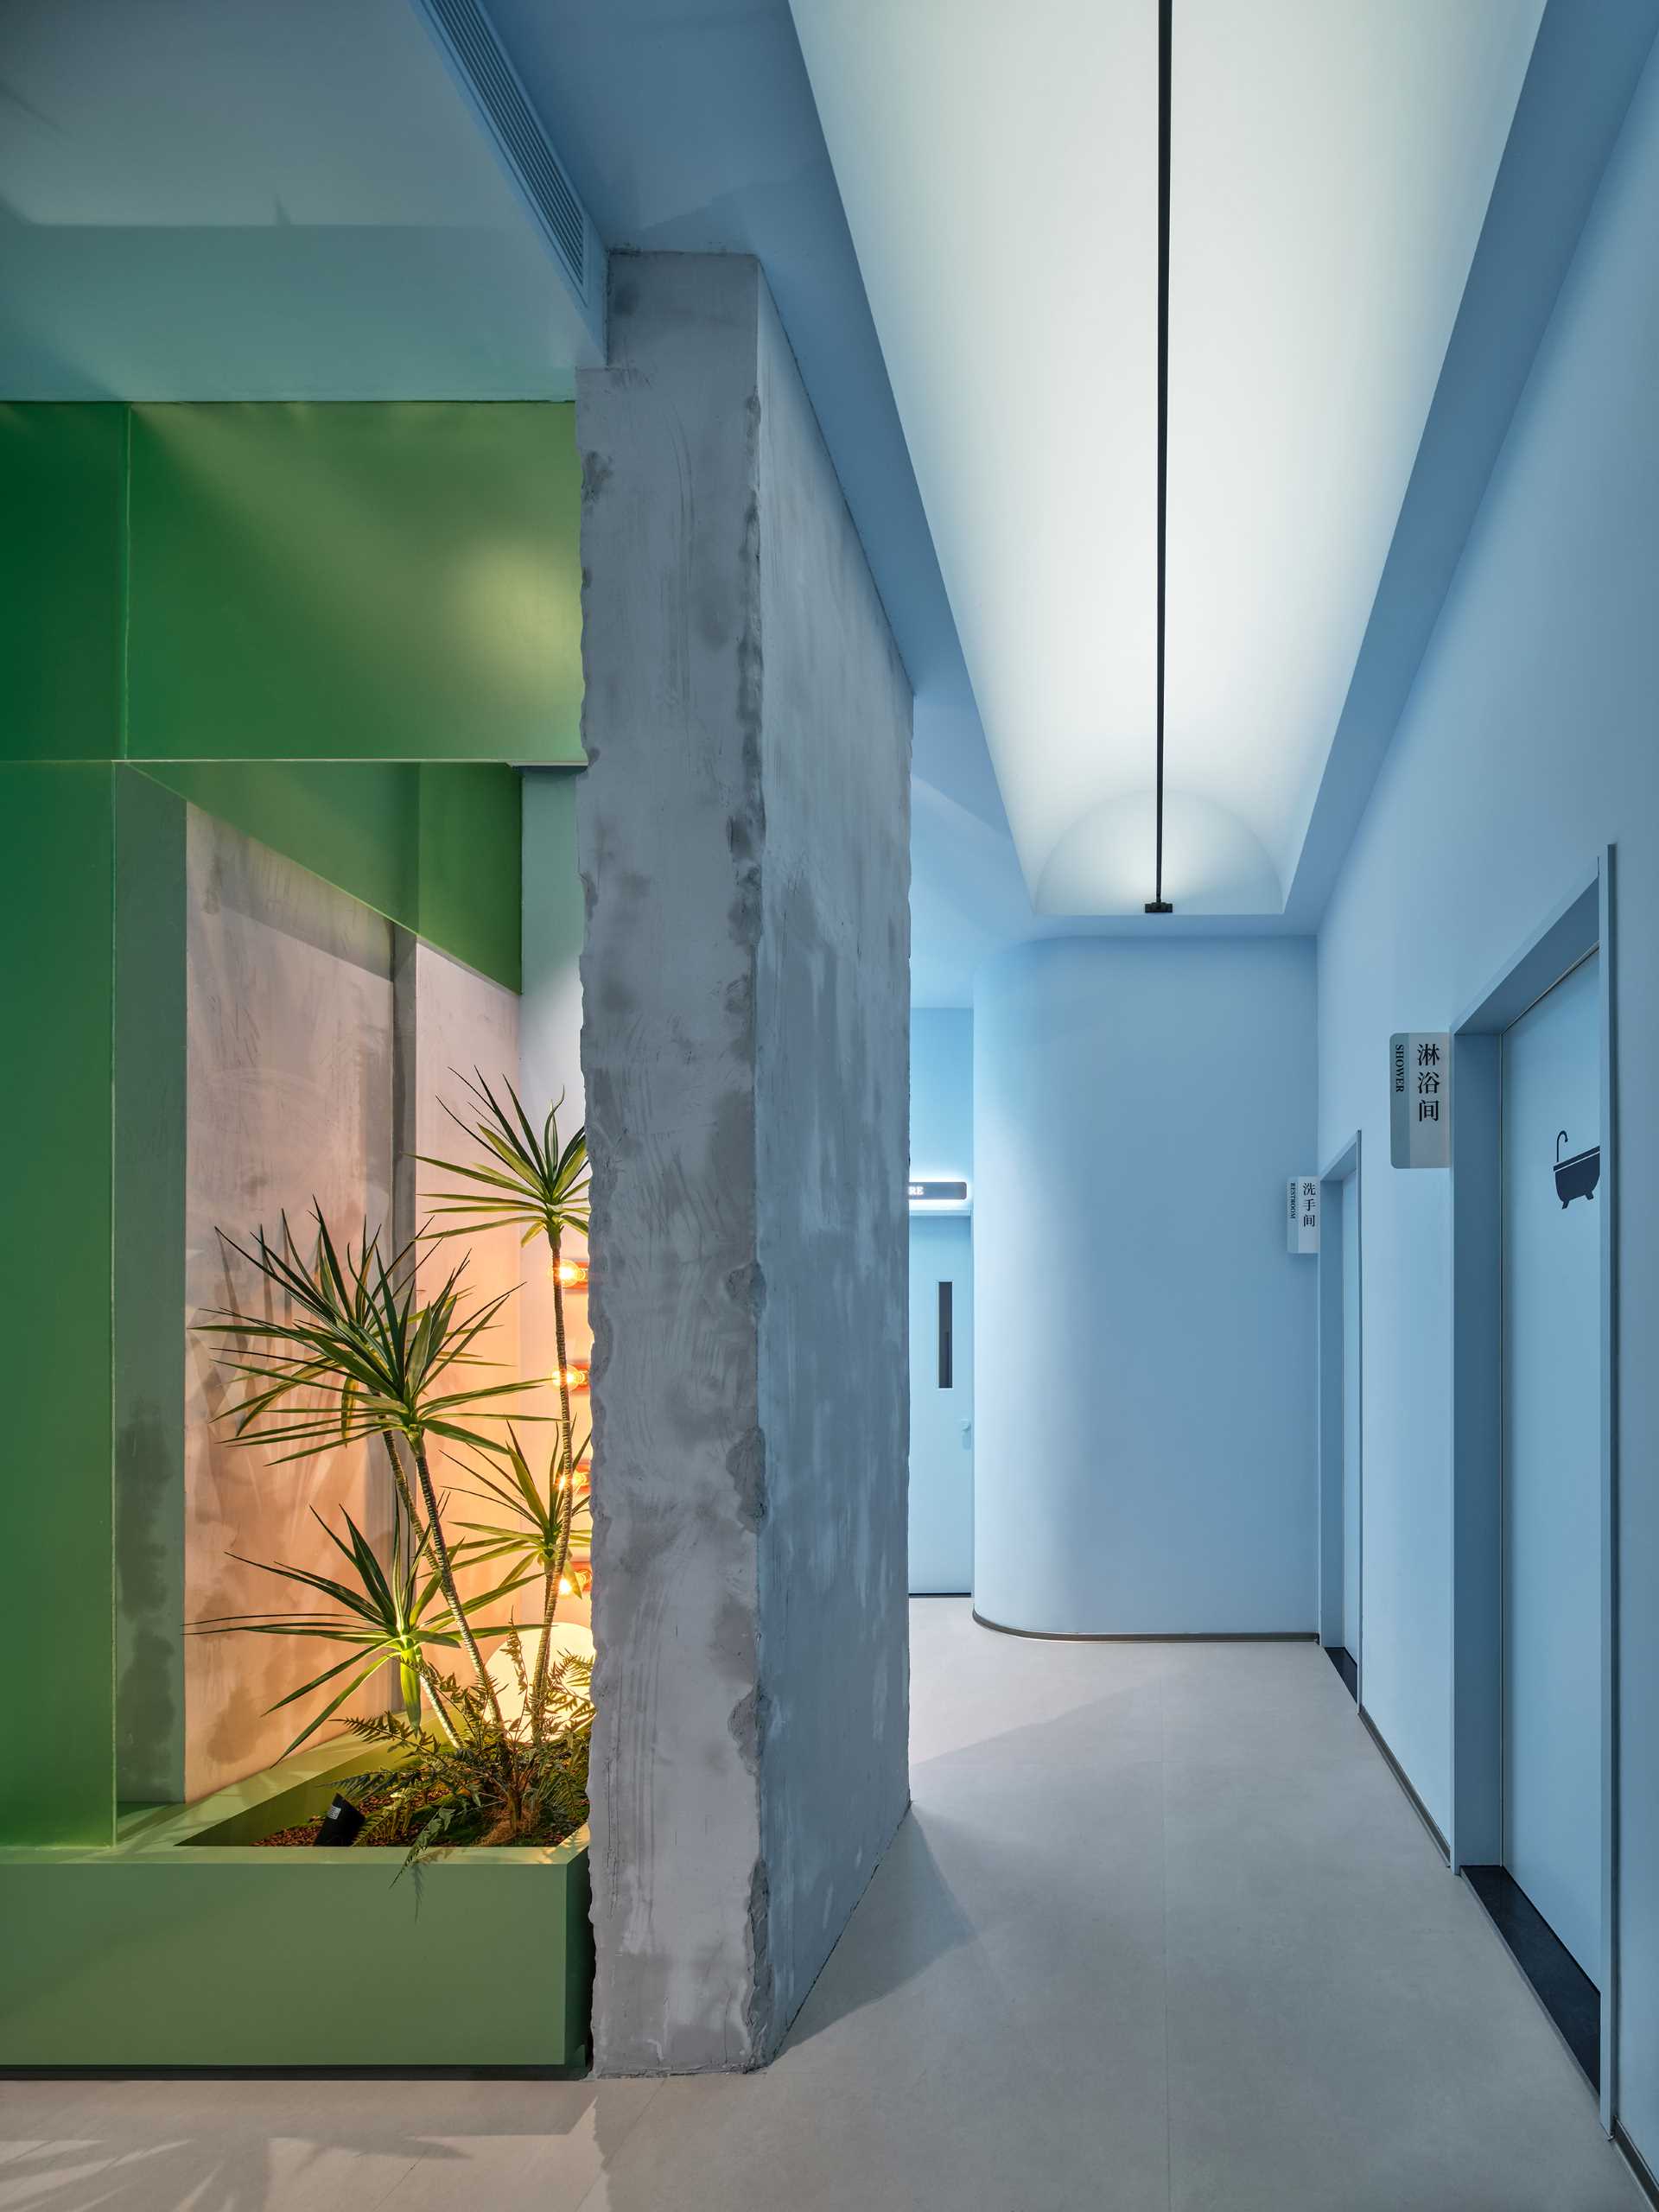 راهرو شامل یک گلدان کوچک و دیوار بتنی اصلی است، در حالی که راهرو آبی روشن به اتاق های مختلف درمان این مرکز مدرن مراقبت از پوست منتهی می شود.